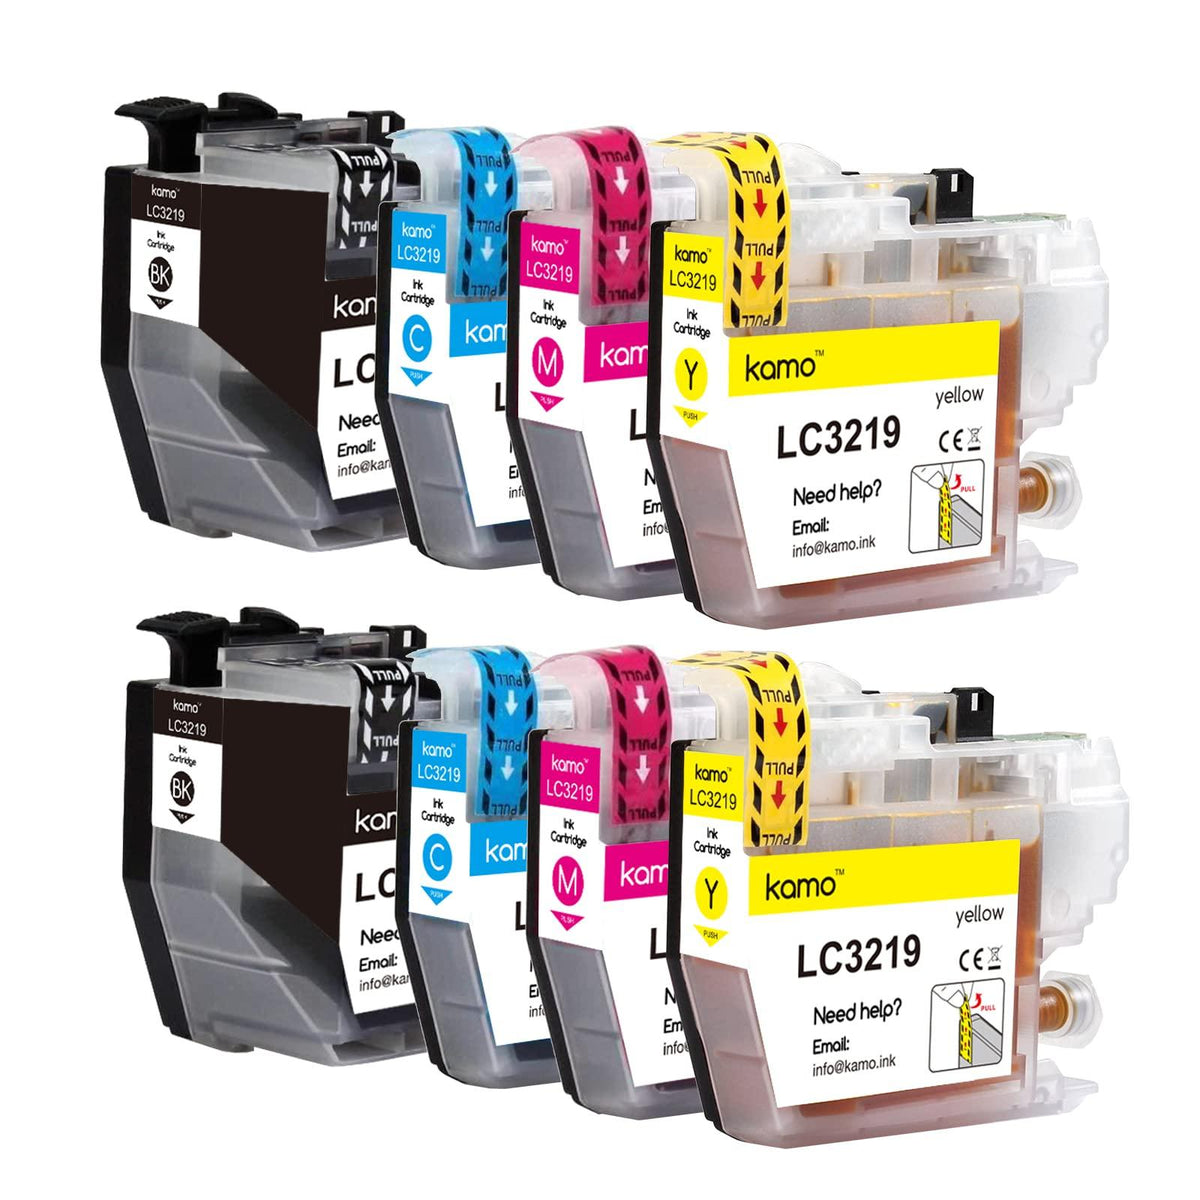 Replacement LC3219XL Ink Cartridges Compatible for Brother LC3219 LC3219XL  Ink Cartridge Work for Brother MFC-J5330DW MFC-J5335DW MFC-J5730DW